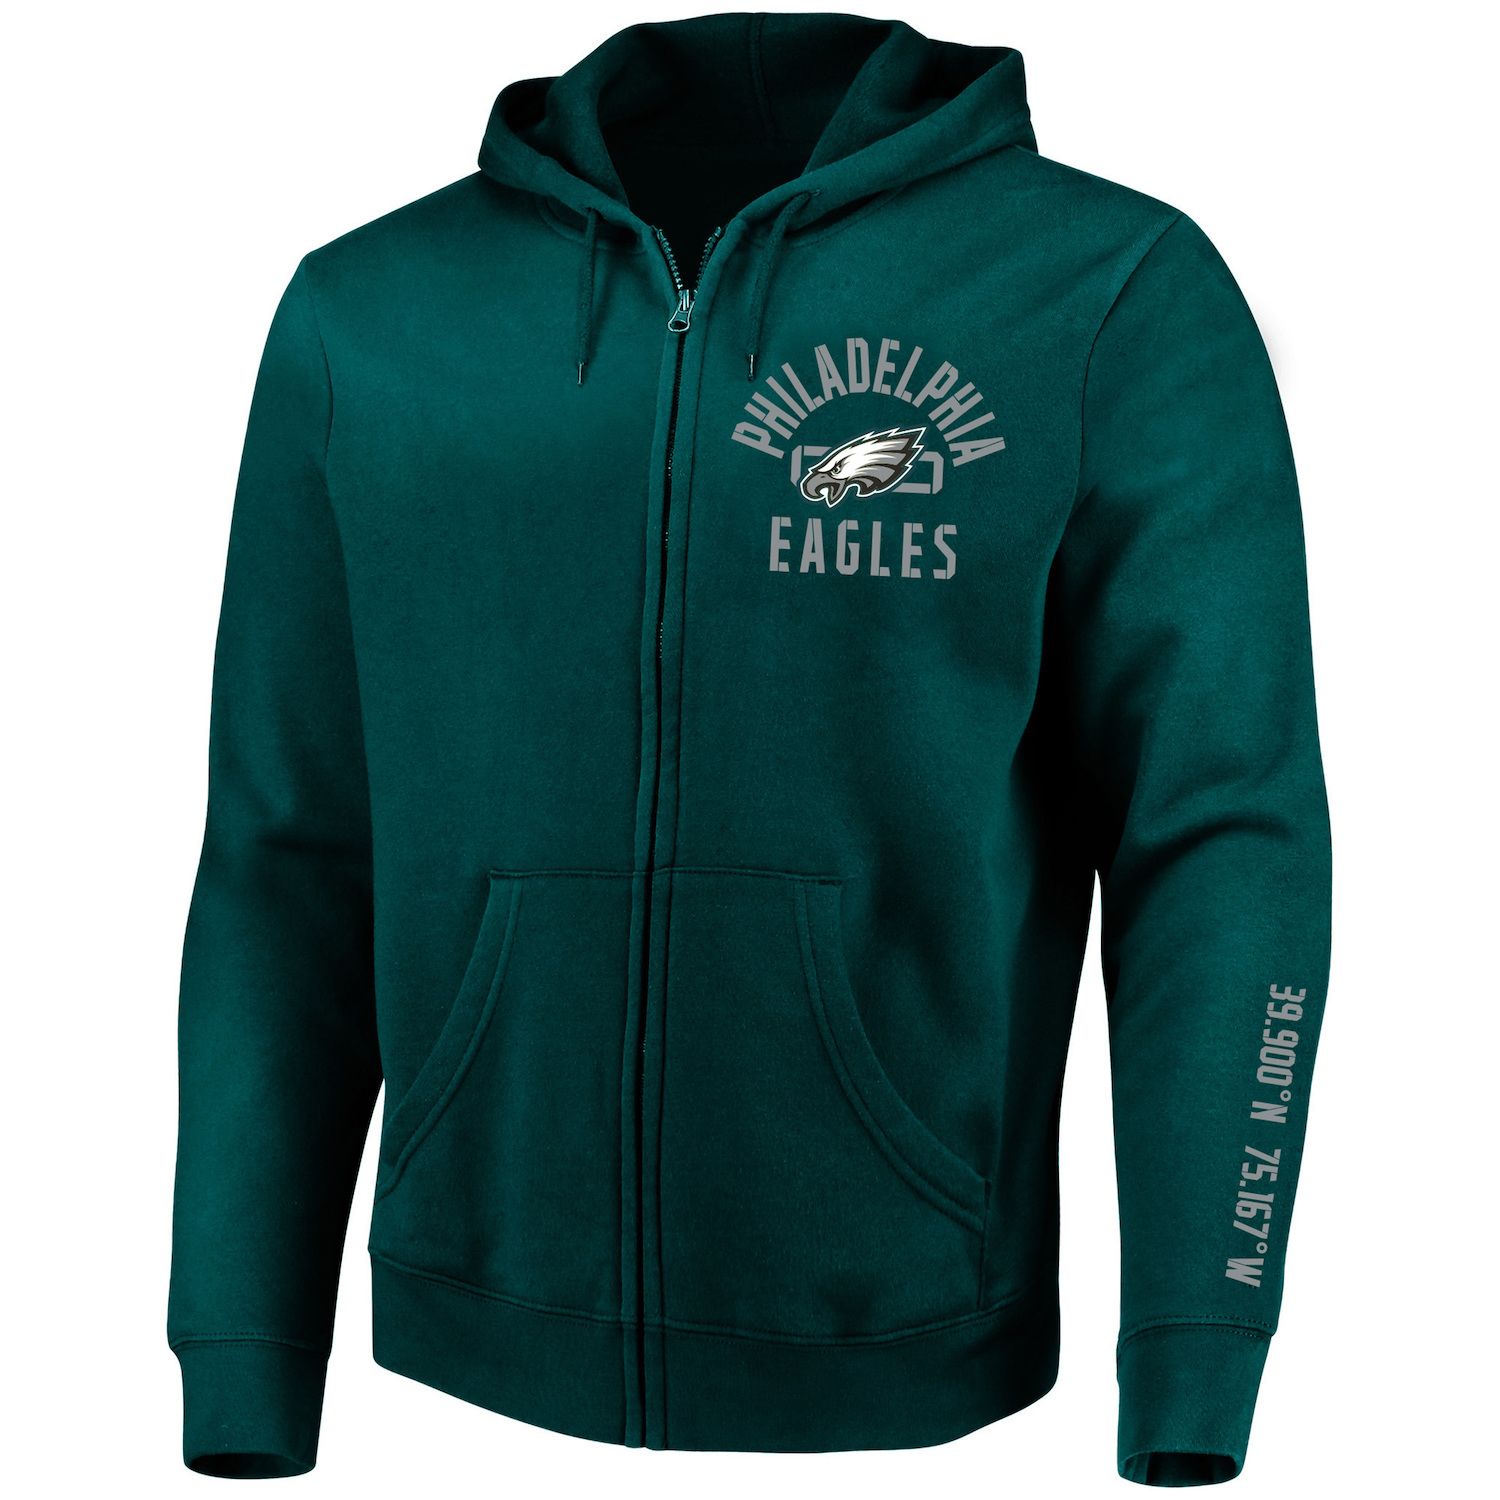 eagles zip hoodie